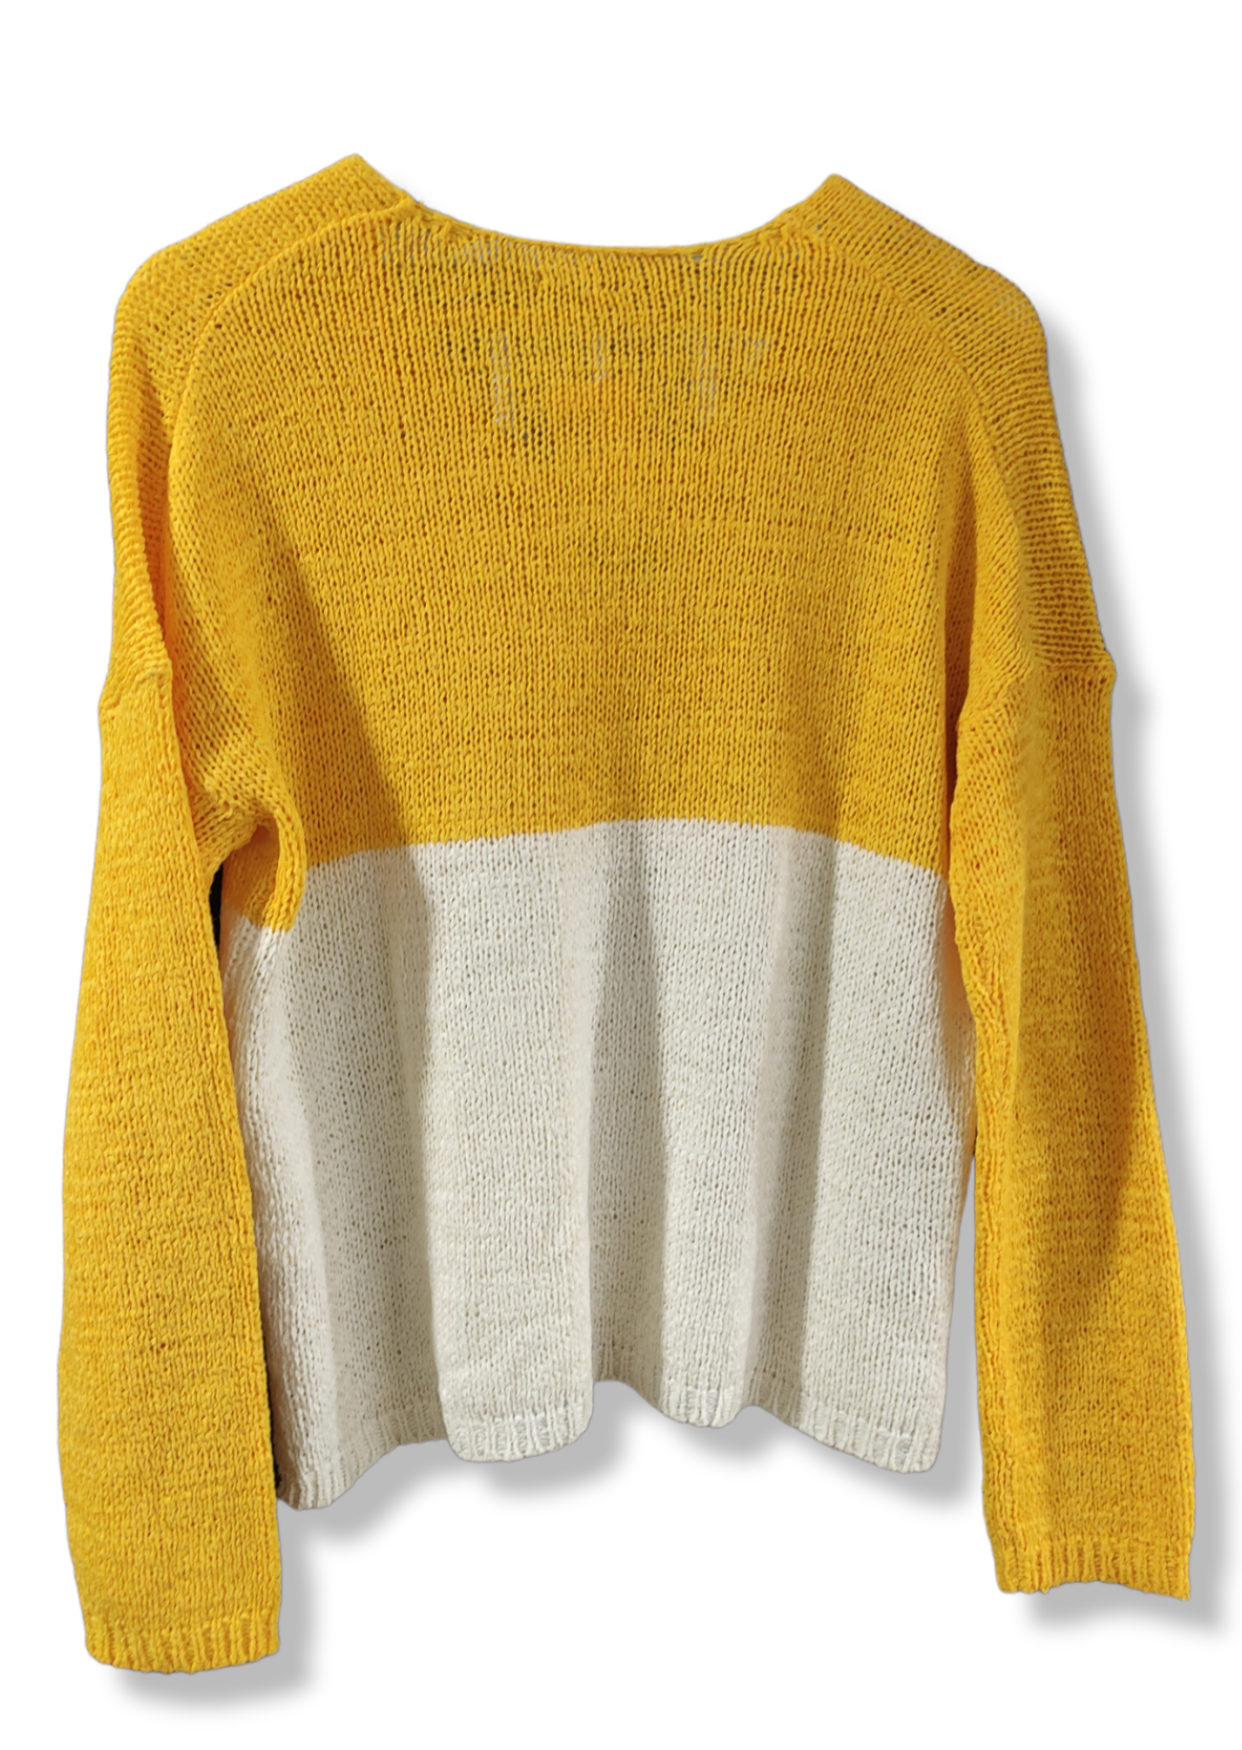 Γυναικεία Πλεκτή Μπλούζα ONLY σε Κίτρινο - Λευκό χρώμα (Small)